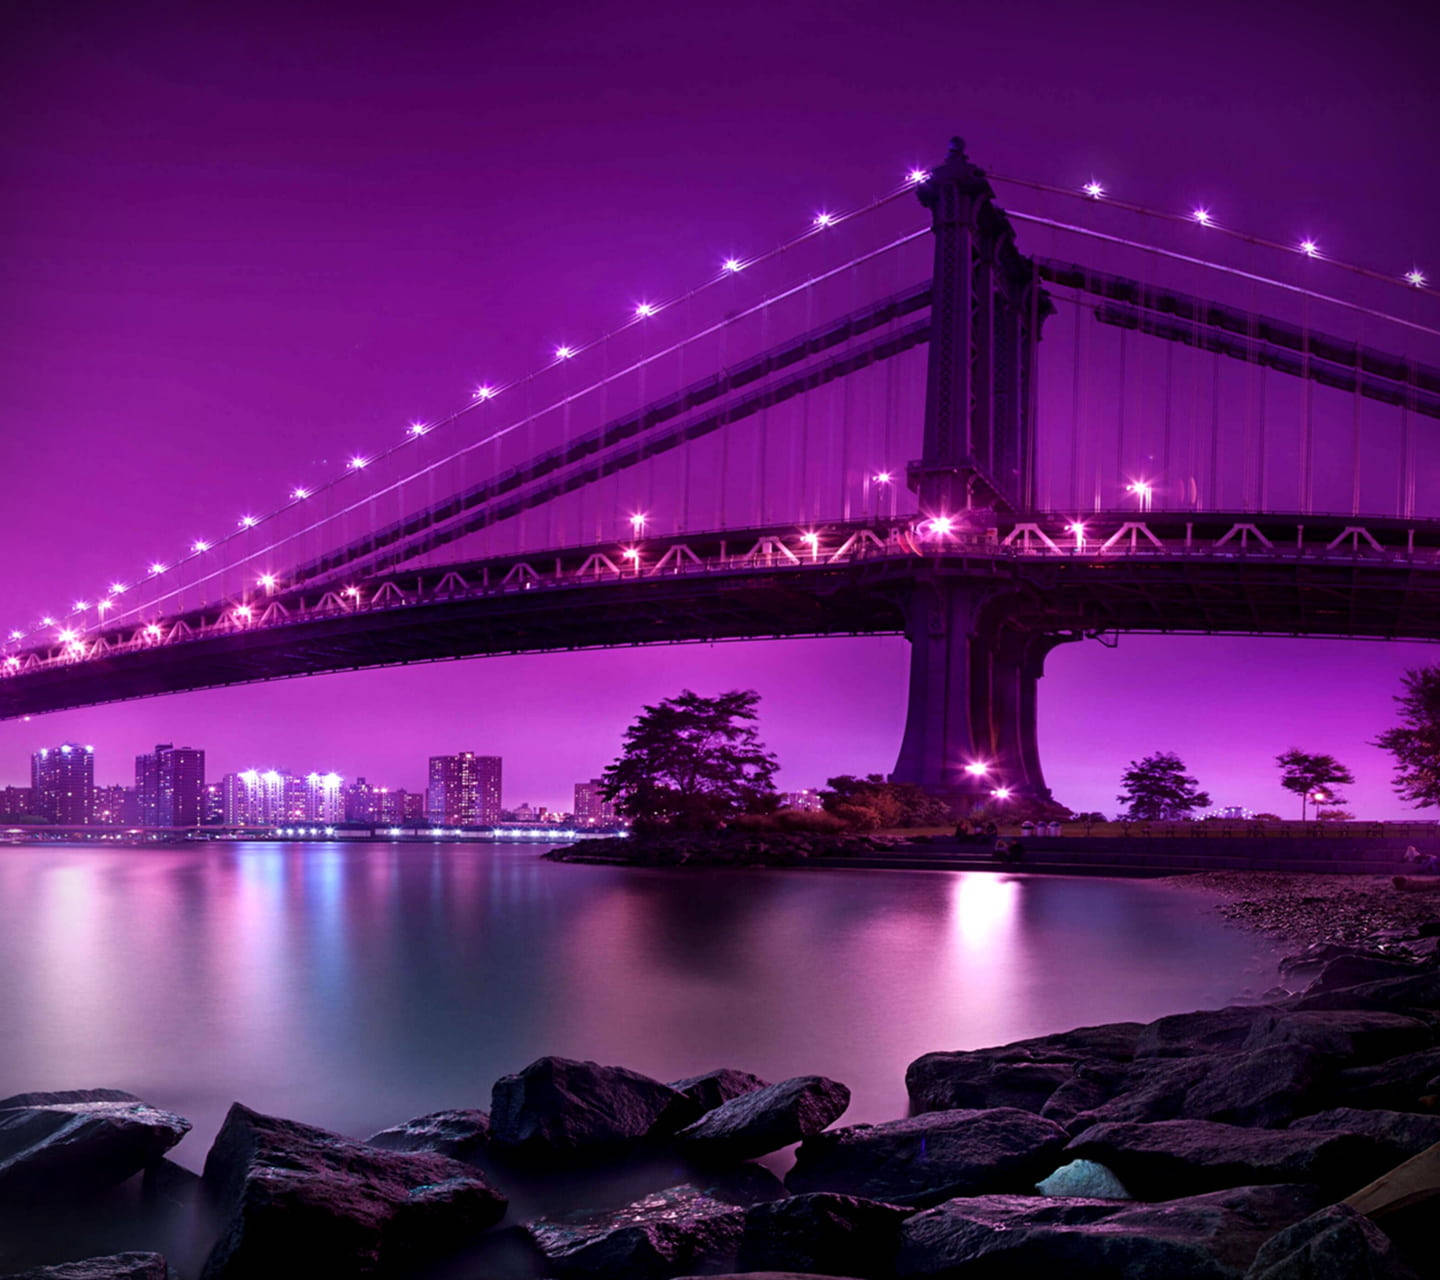 Dark Purple Sky And Bridge Background